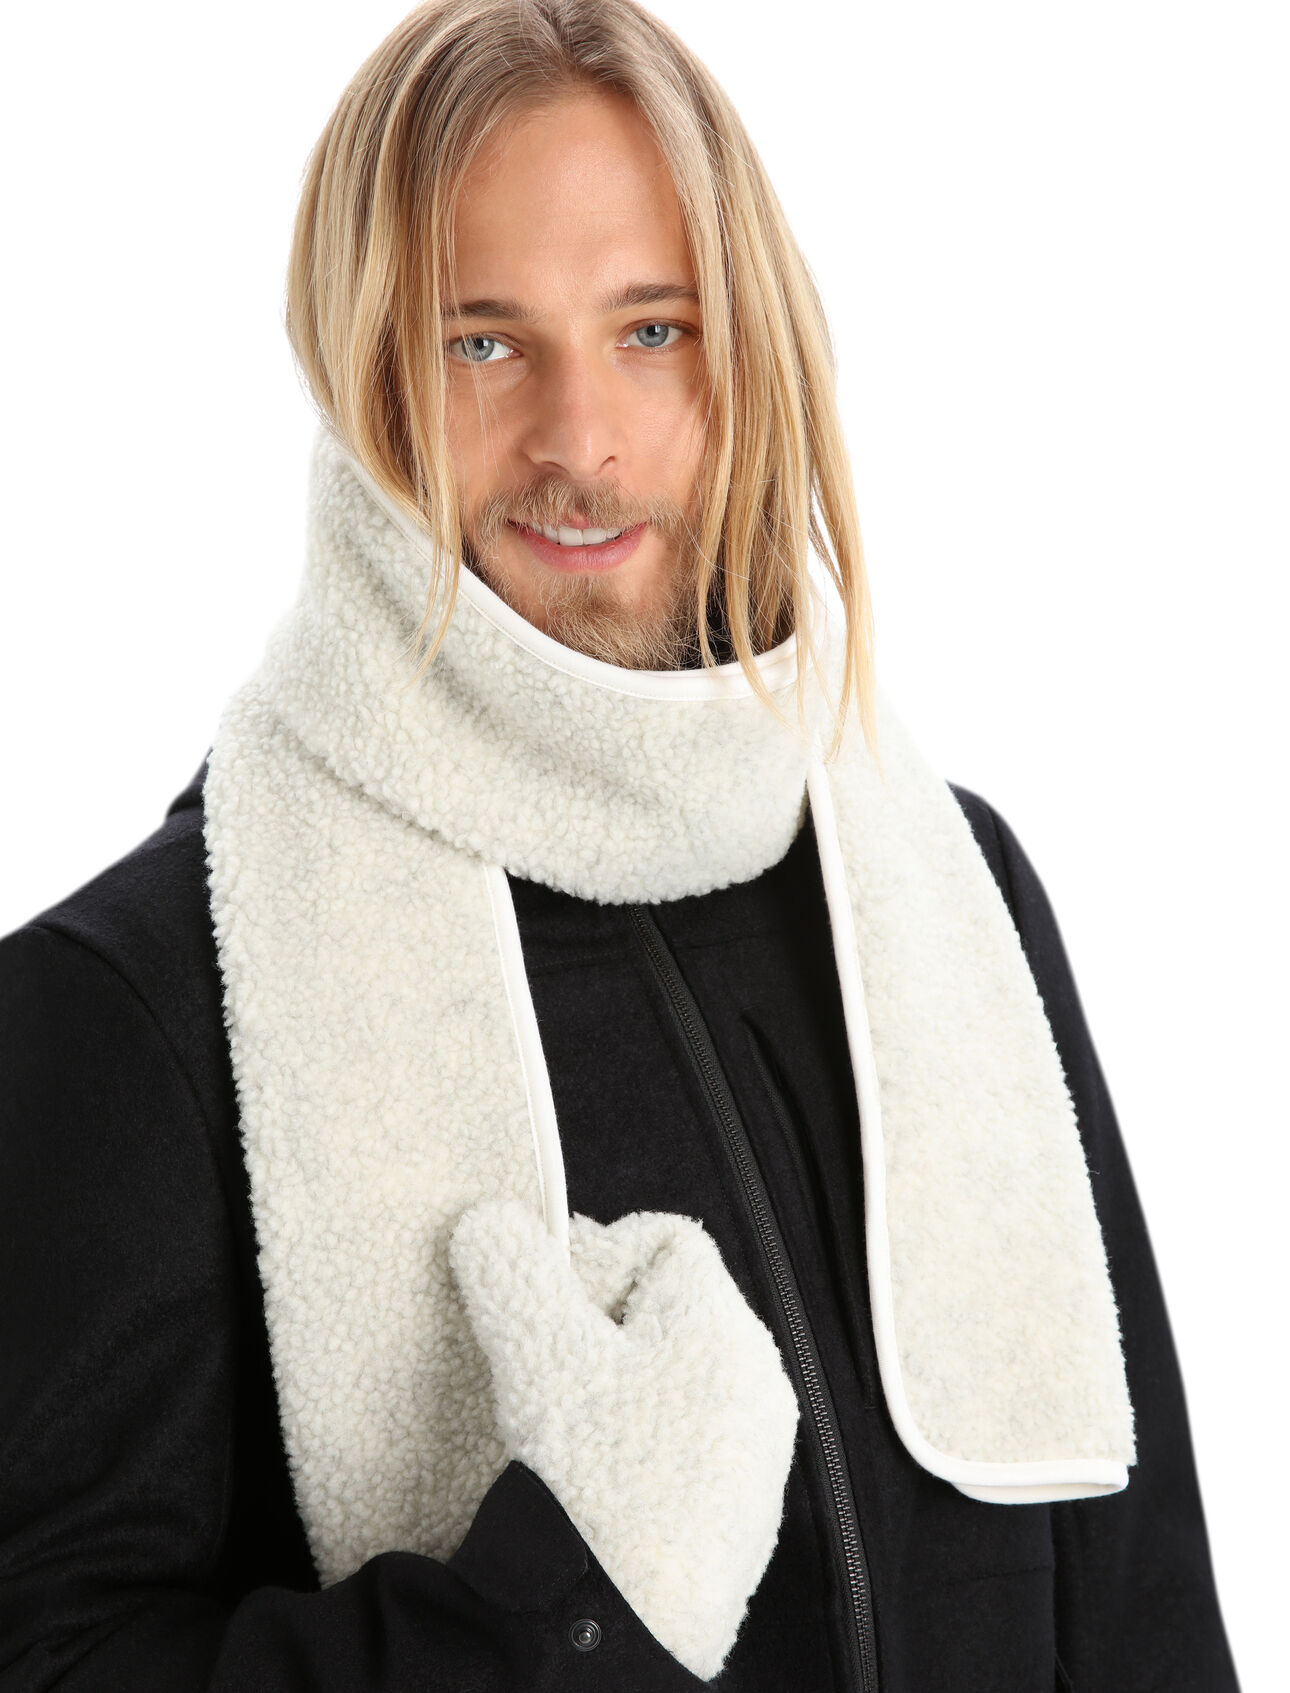 Unisex Realfleece™ High Pile sjaal van merinowol De superwarme Realfleece™ High Pile sjaal is ideaal voor superkoude dagen. De sjaal is gemaakt van luchtige merinowol fleece met een zachte merino jersey achterkant voor een ultieme warmte in de winter.